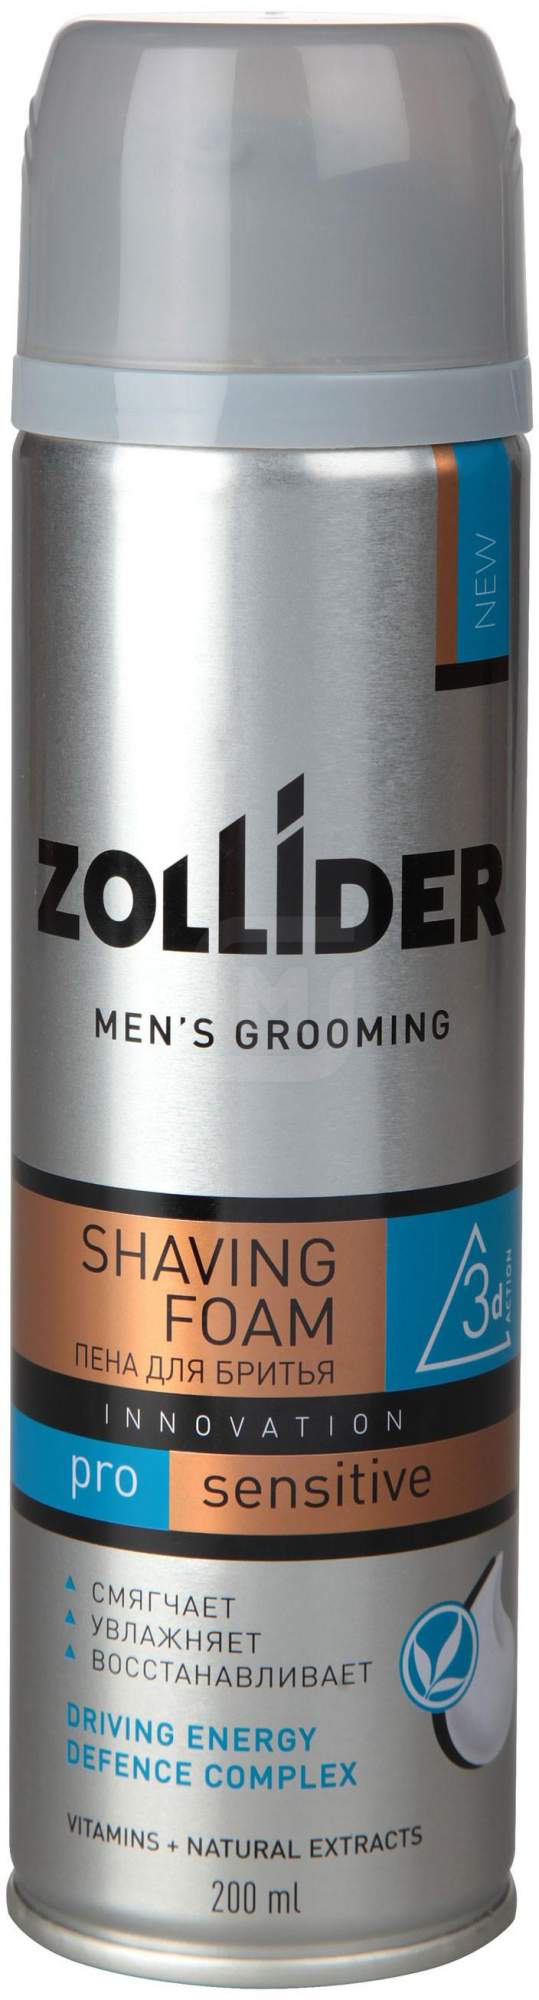 Пена для бритья Zollider Pro Sensitive для чувствительной кожи мужская 200 мл